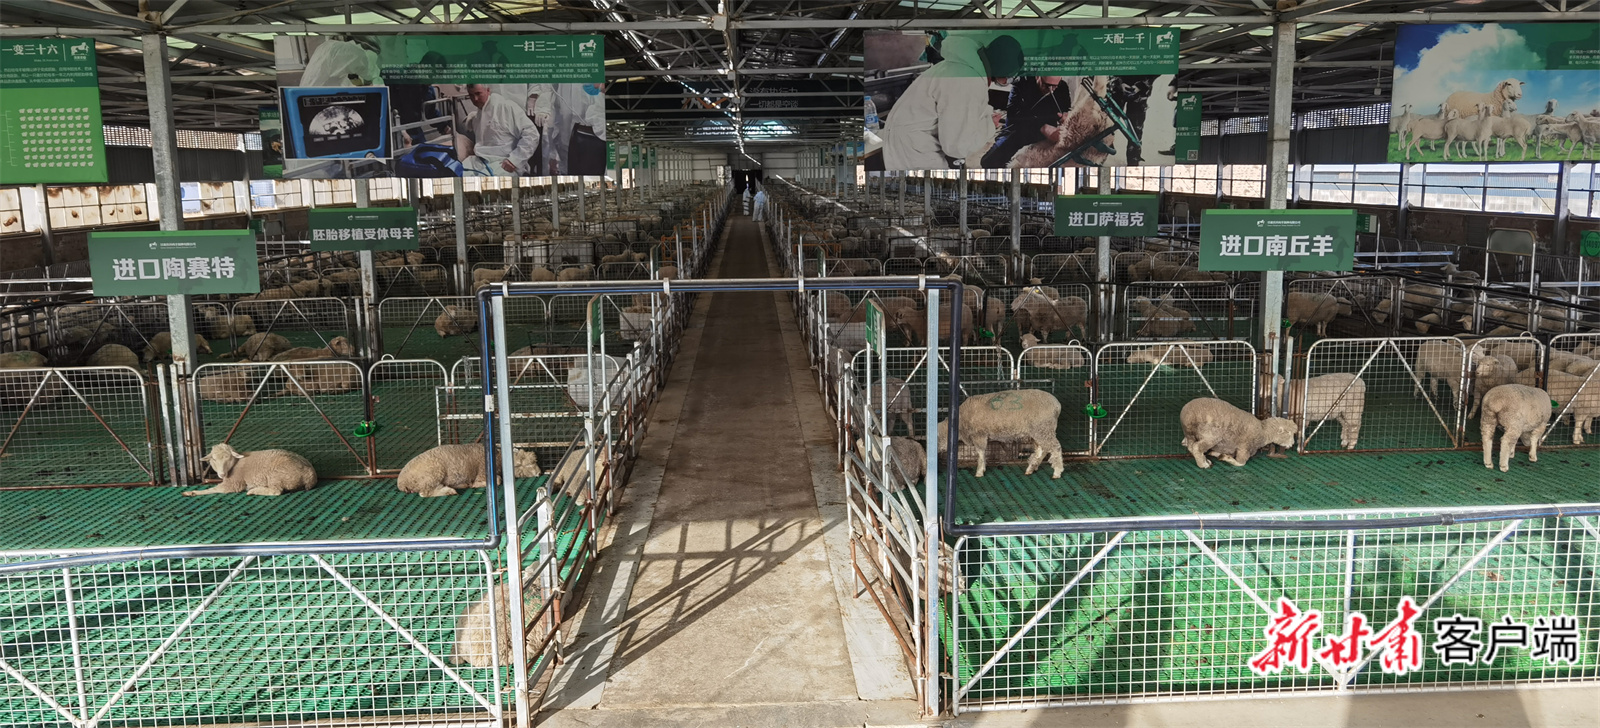 甘肃庆环肉羊（制种）有限公司种羊繁育基地。